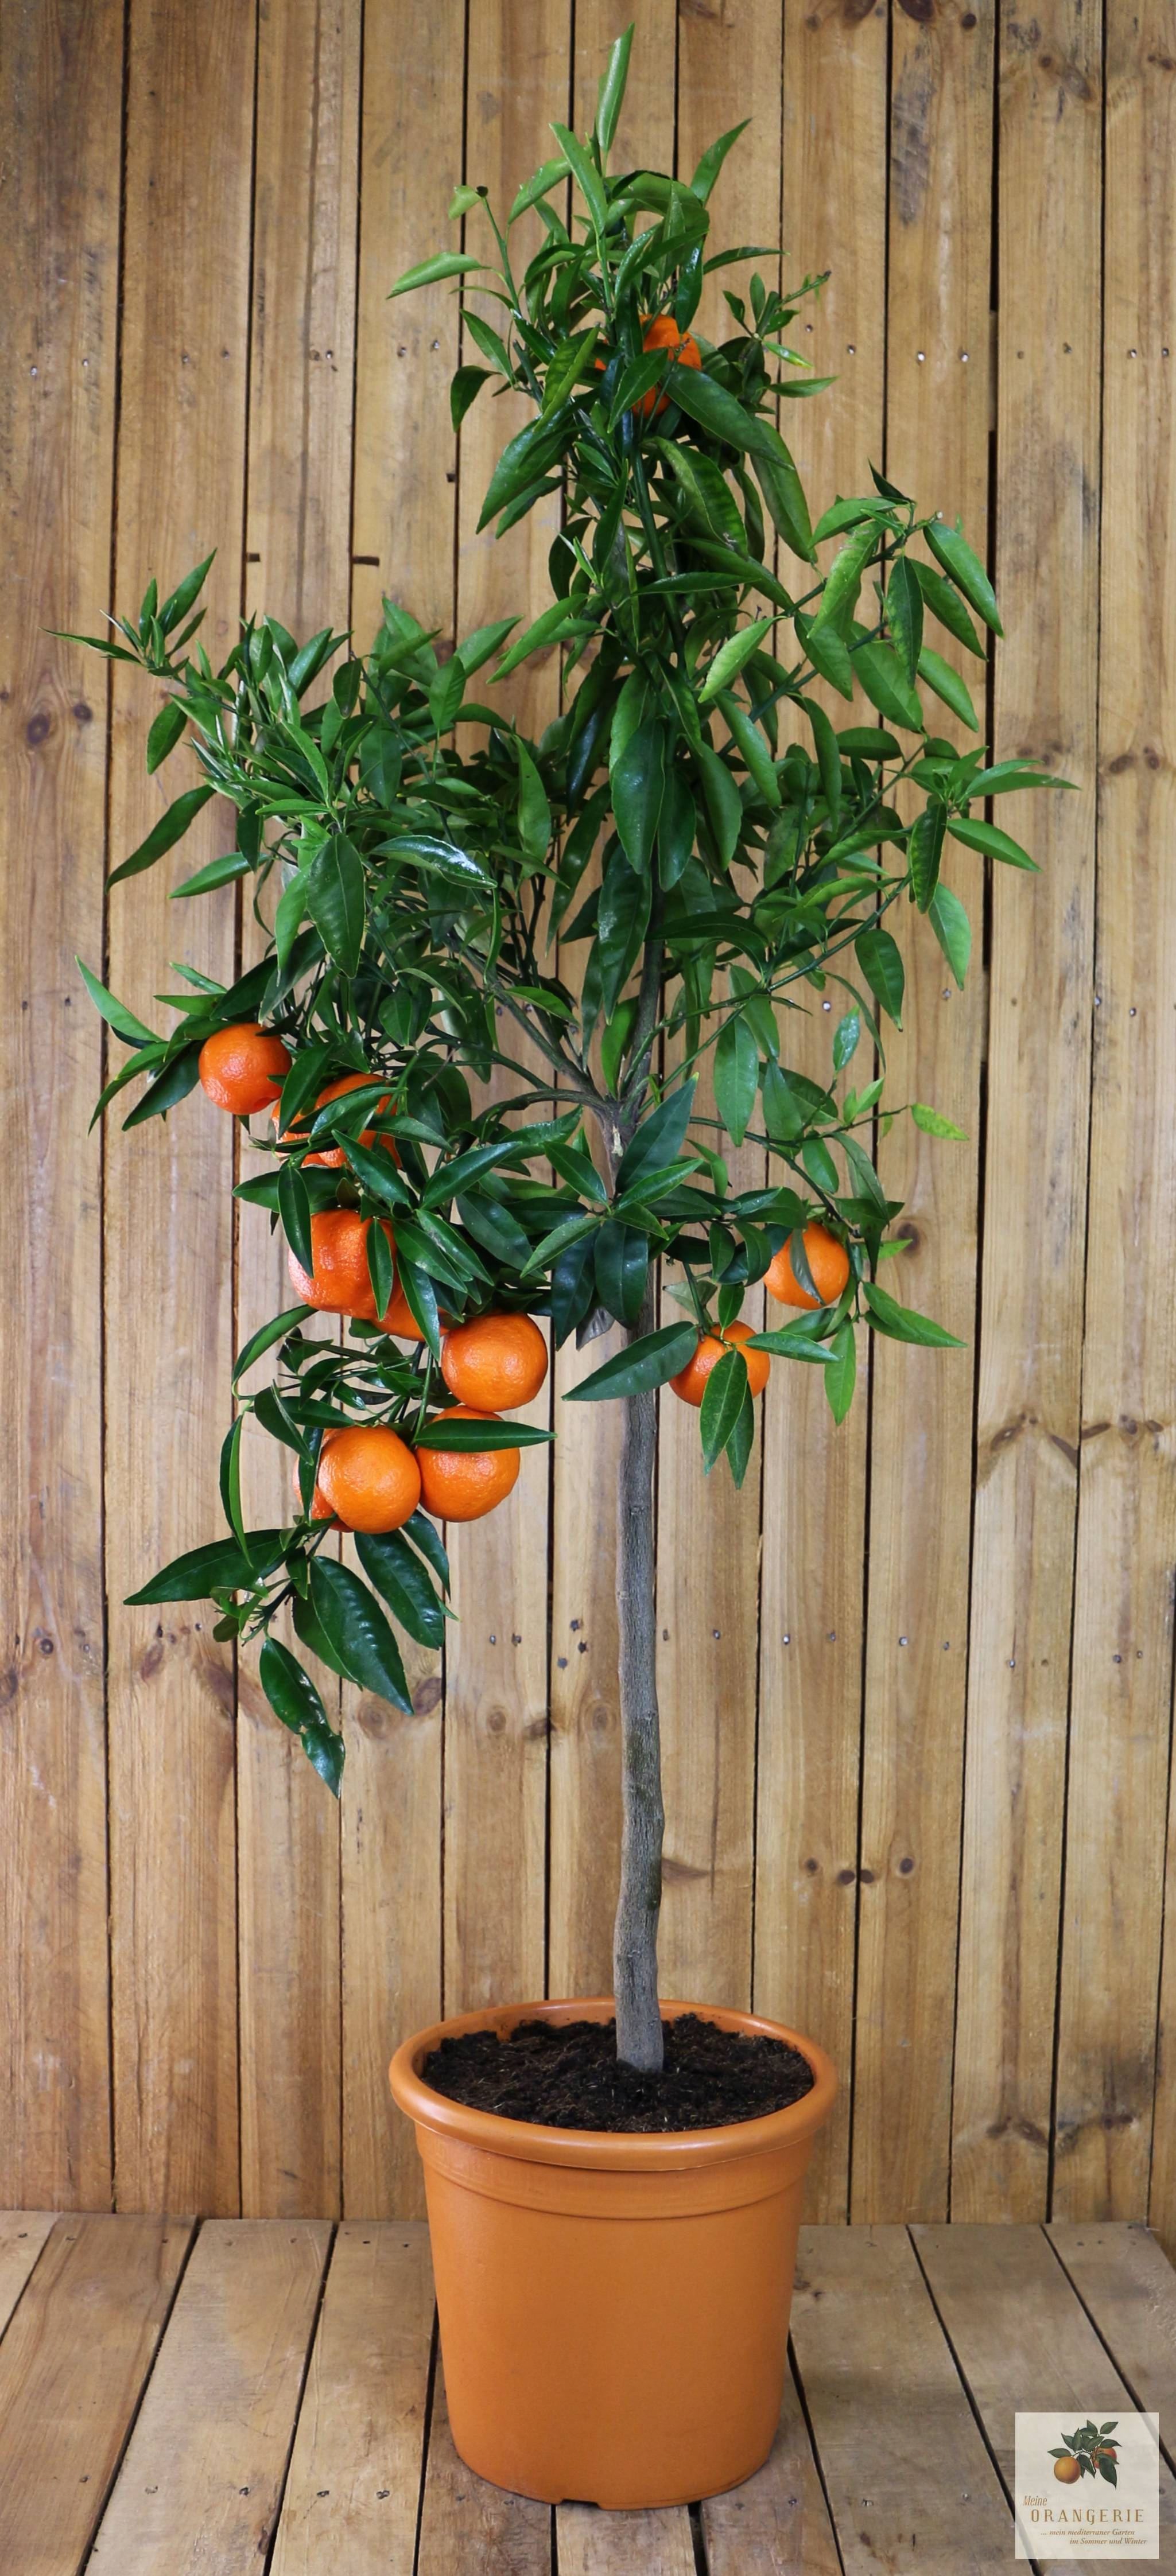 Clementinenbaum [Grande] - Citrus clementina / Citrus reticulata 'Clementine'